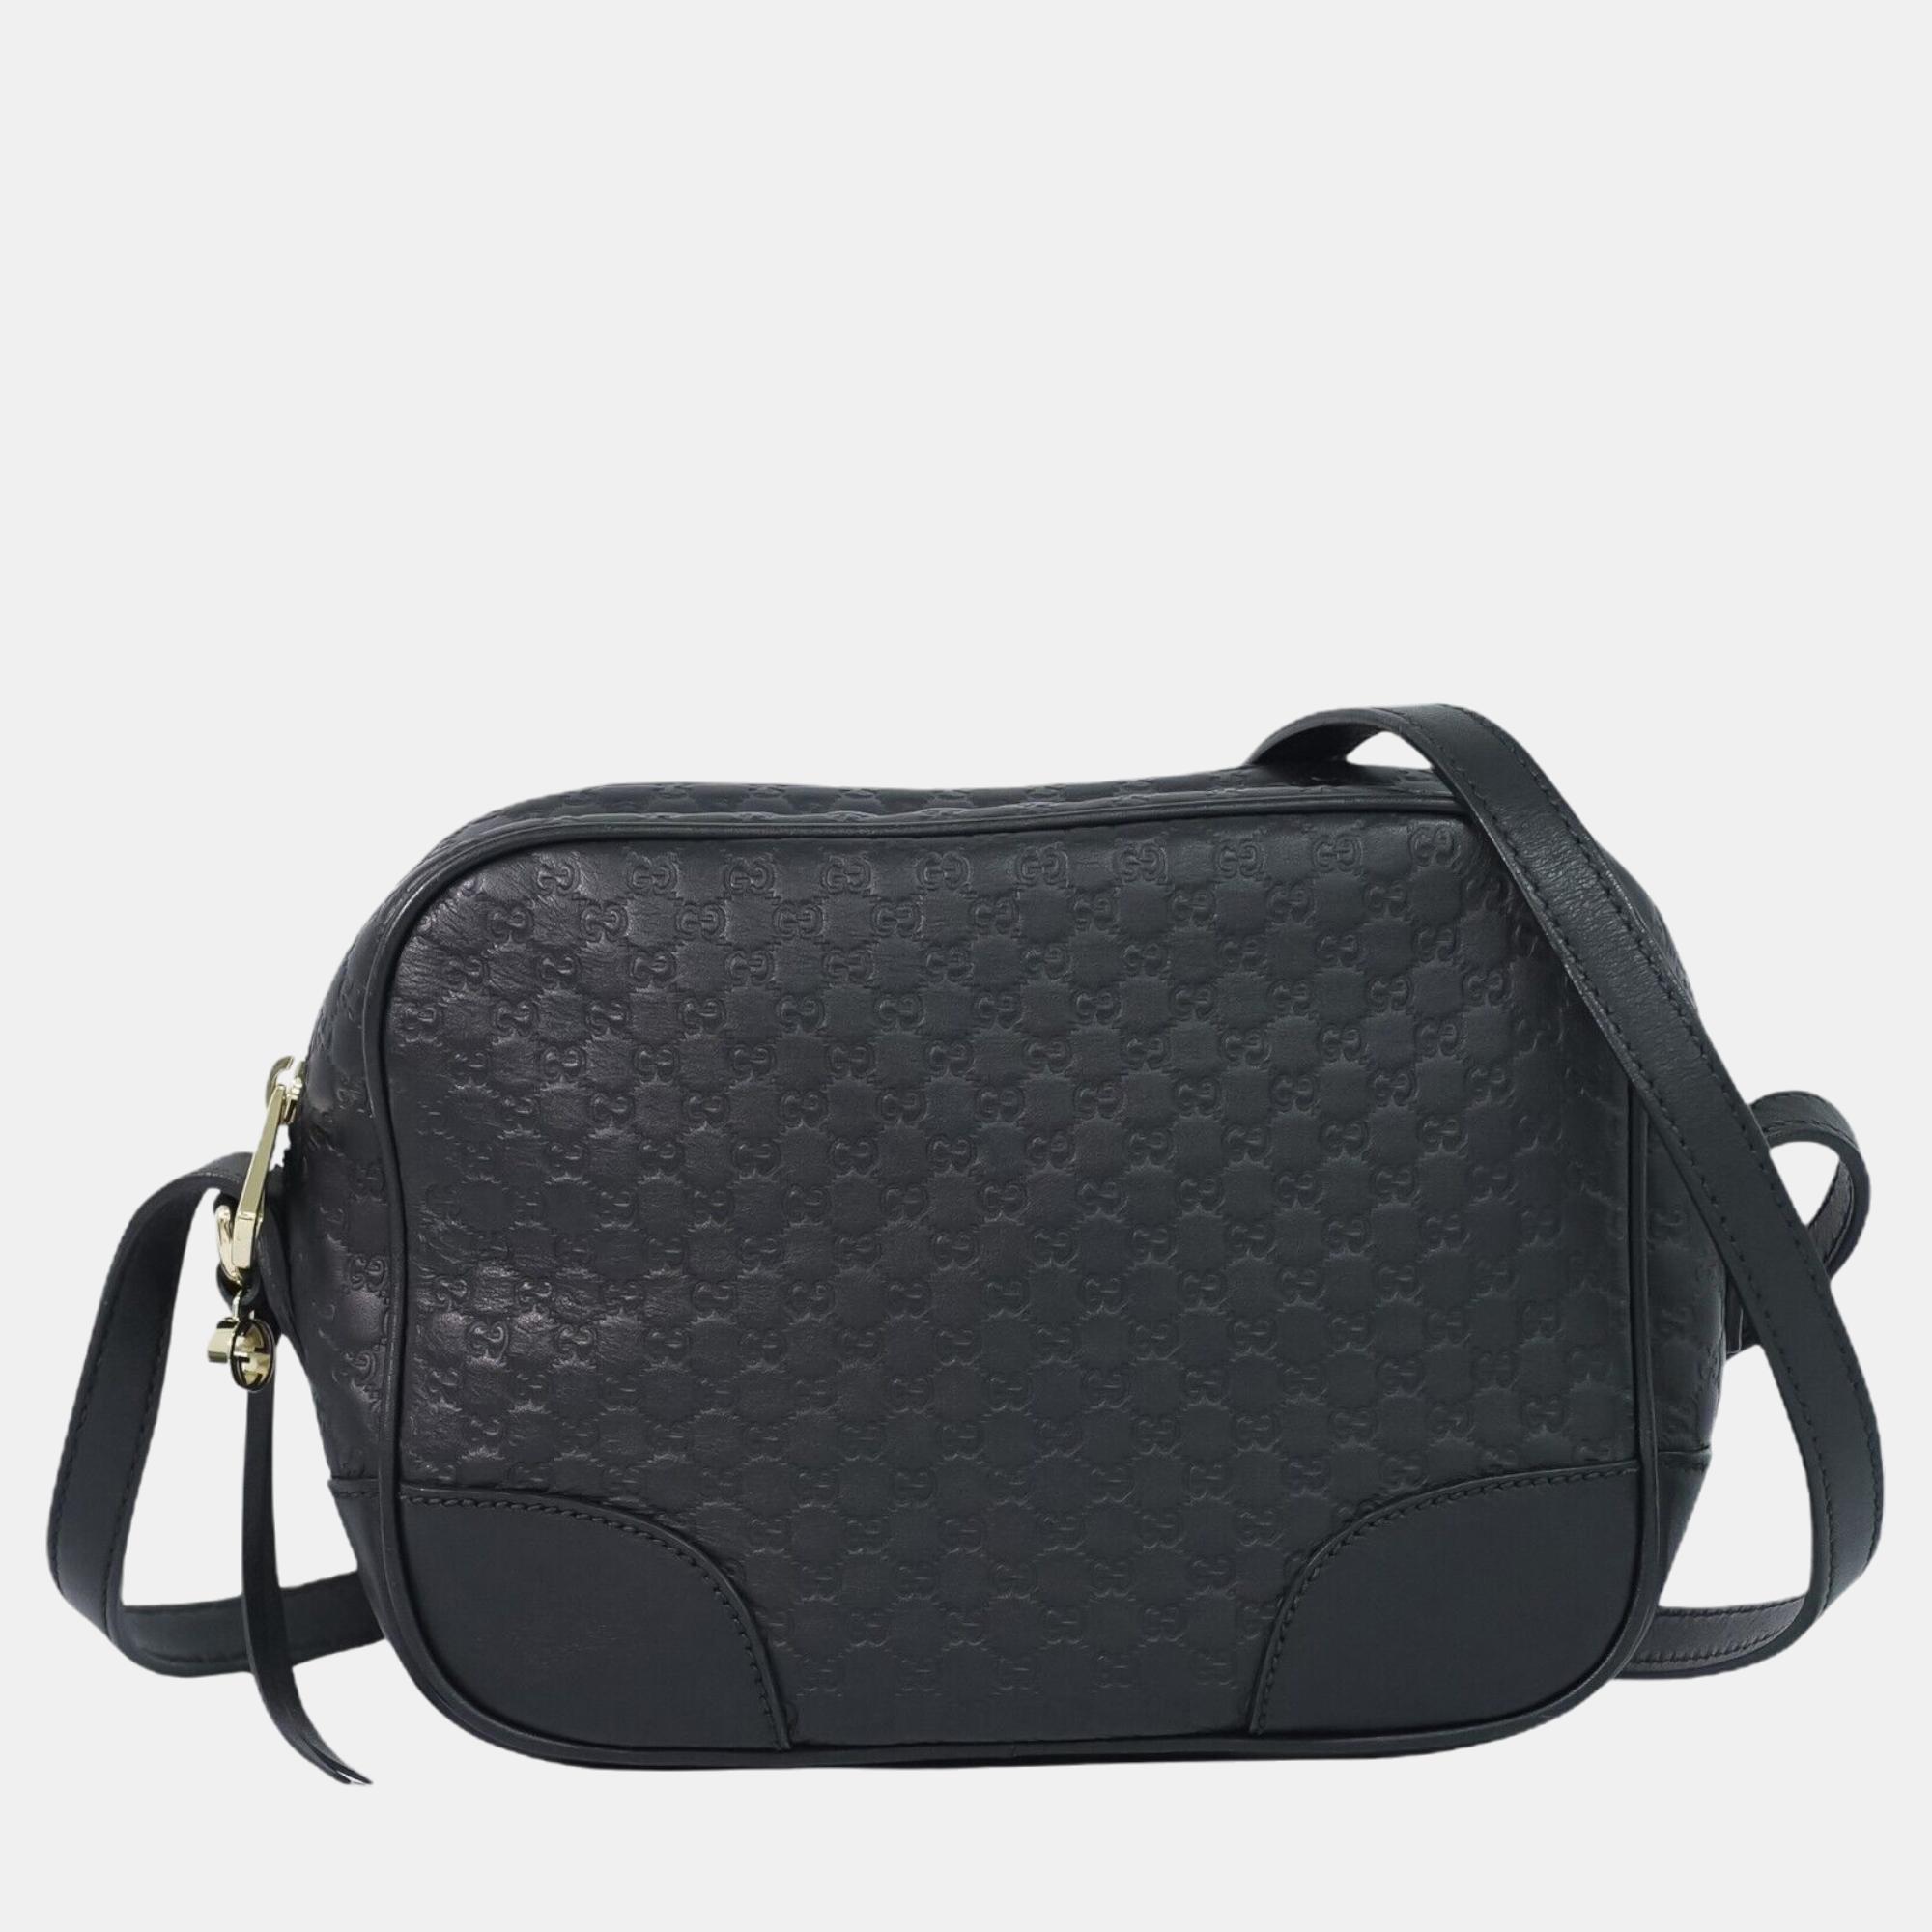 Gucci Black Leather Microguccissima Mini Bree Crossbody Bag